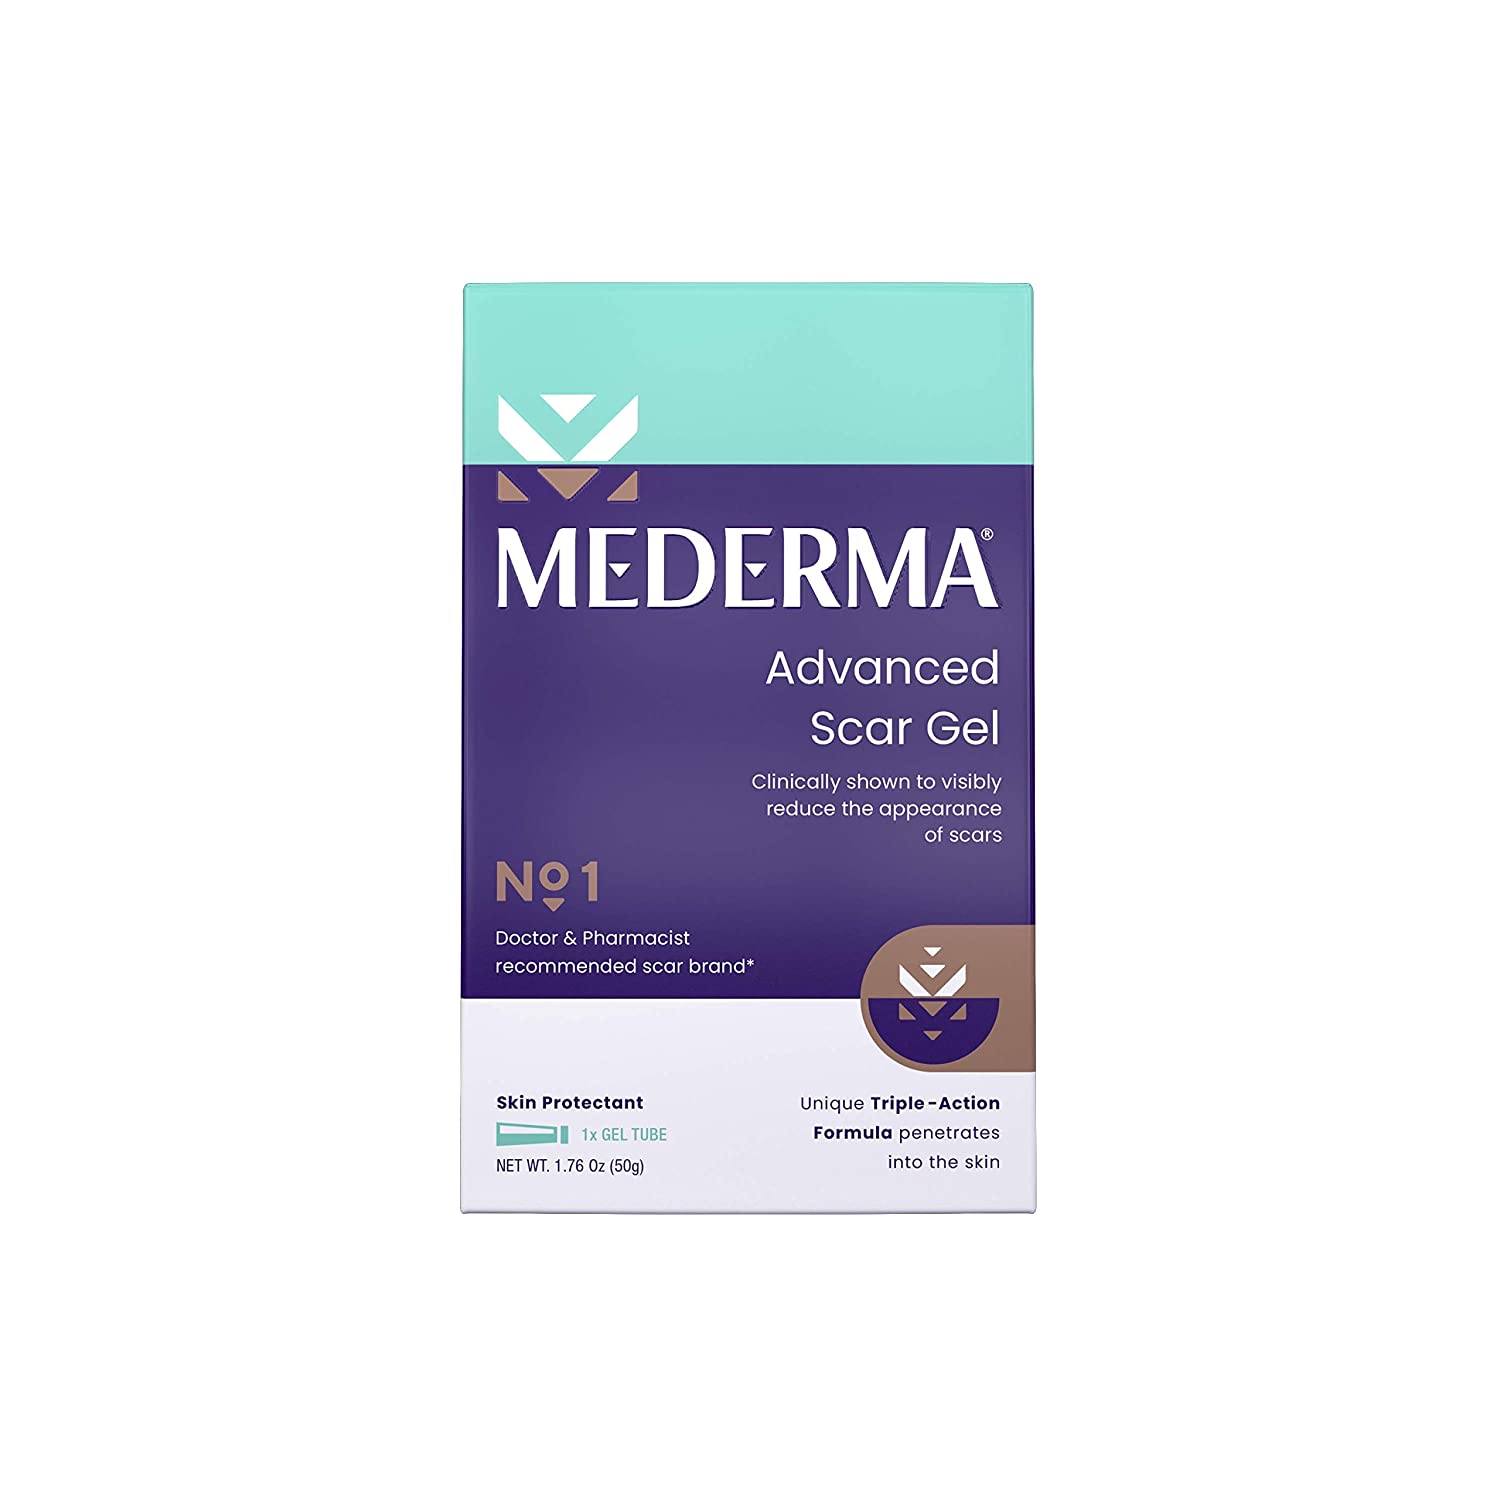 Scar gel. Mederma Advanced scar Gel. Mederma Advanced scar Gel инструкция по применению. Медерма цена.